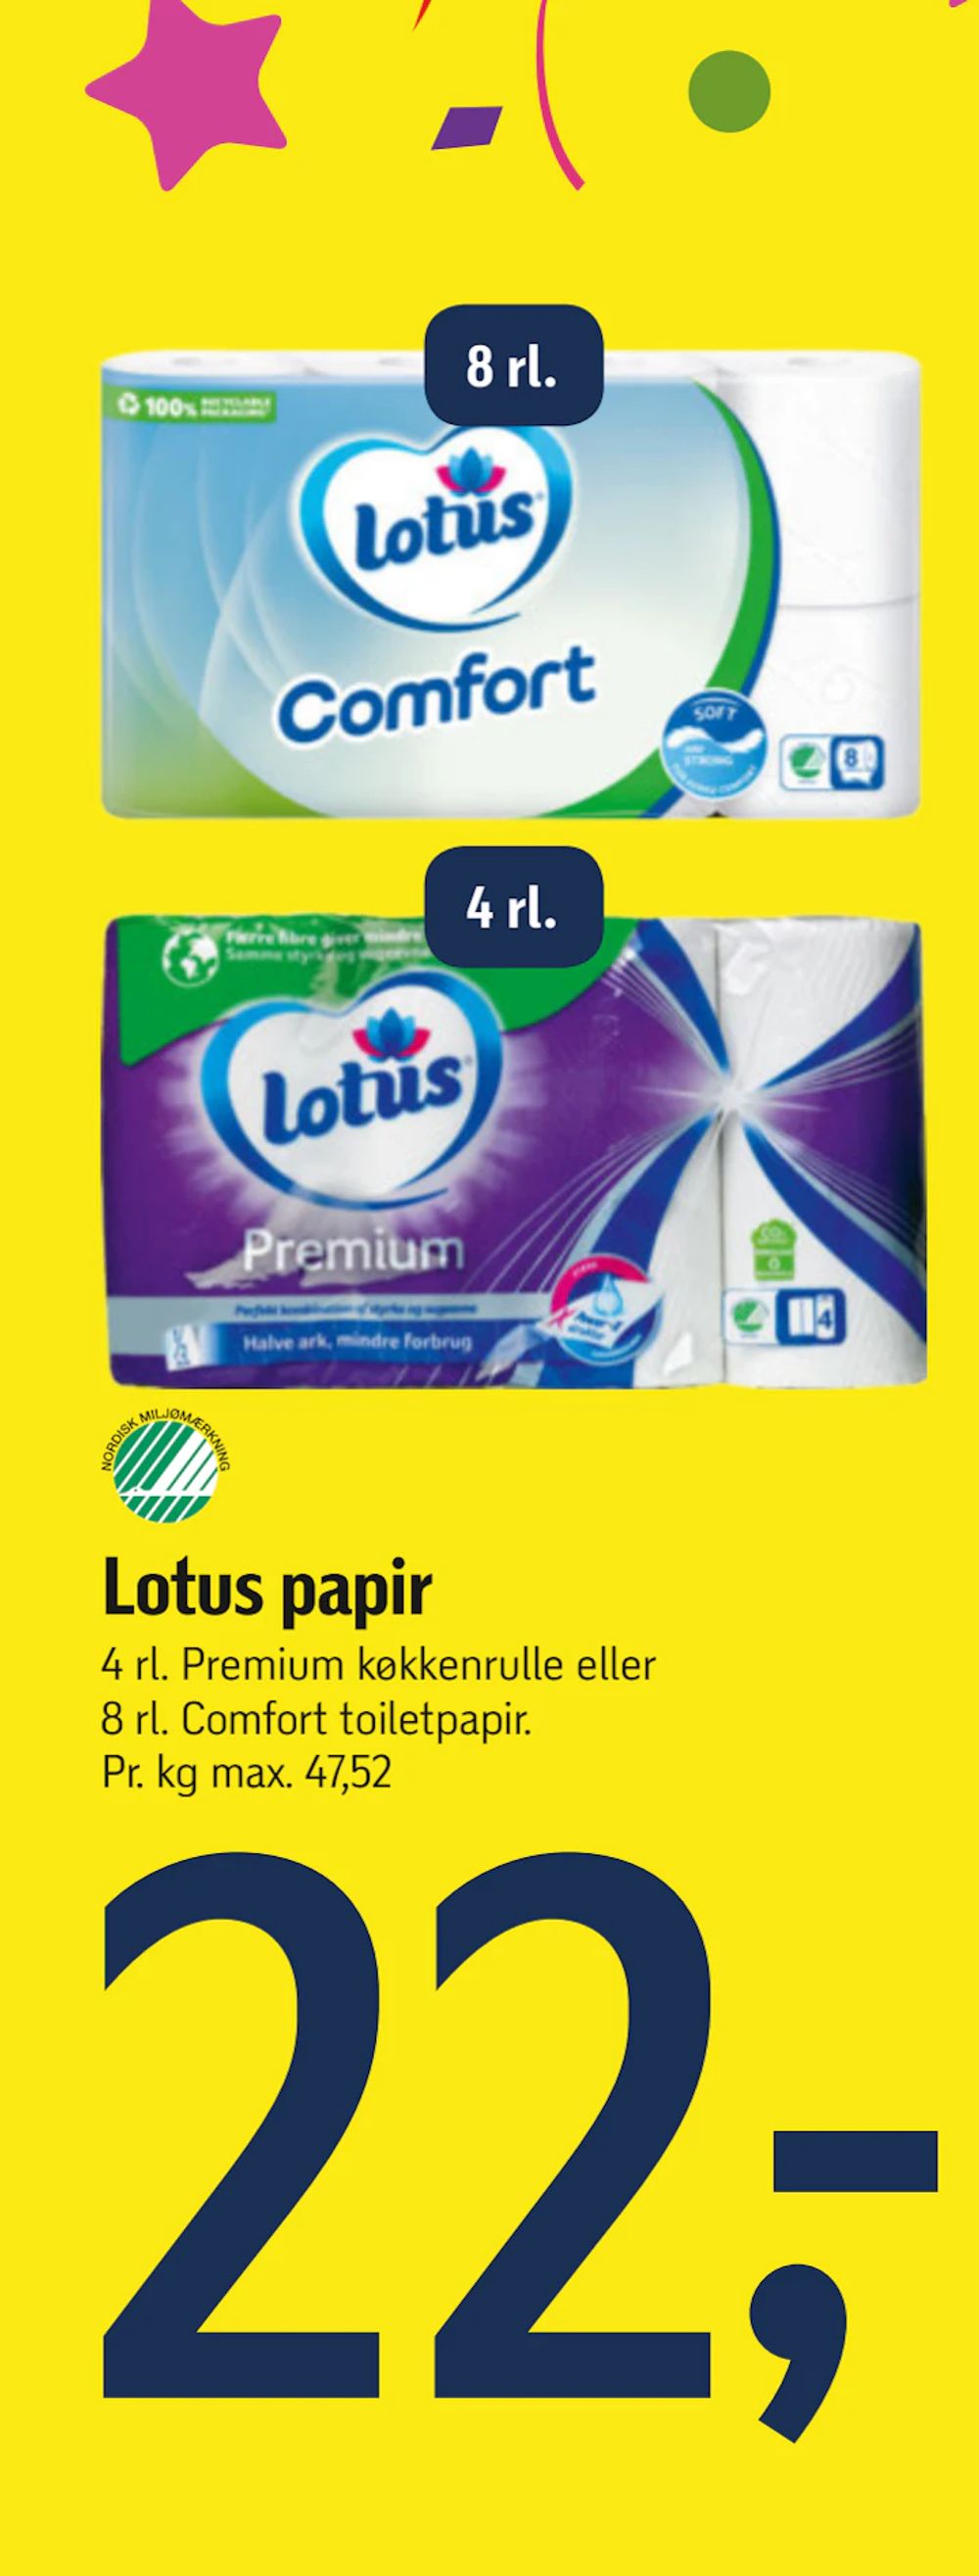 Tilbud på Lotus papir fra føtex til 22 kr.